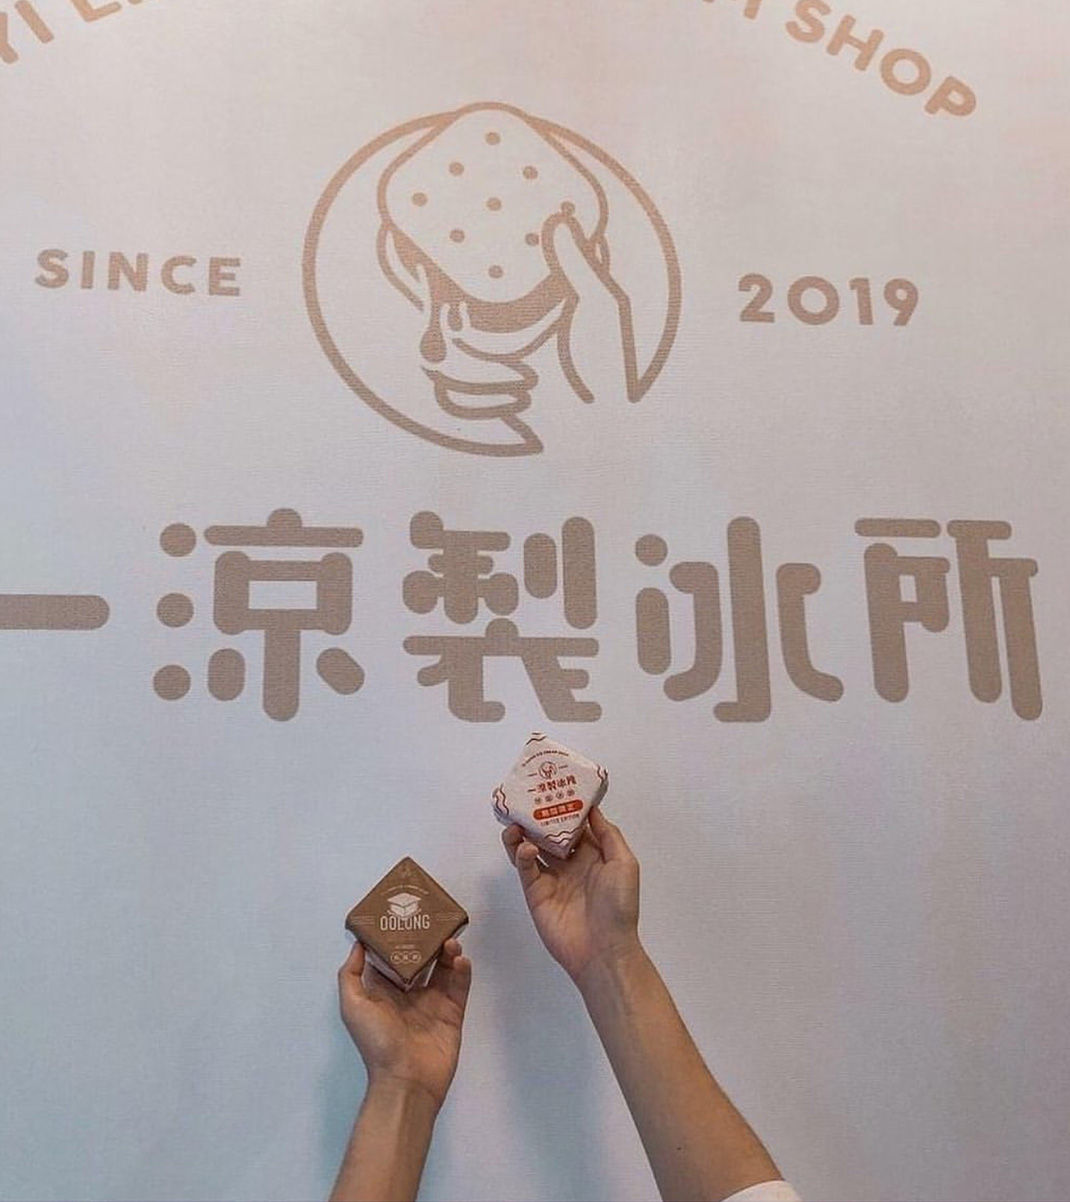 一凉制冰所logo设计 台湾 饮品店 制冰所 字体设计 插图设计 logo设计 vi设计 空间设计 视觉餐饮